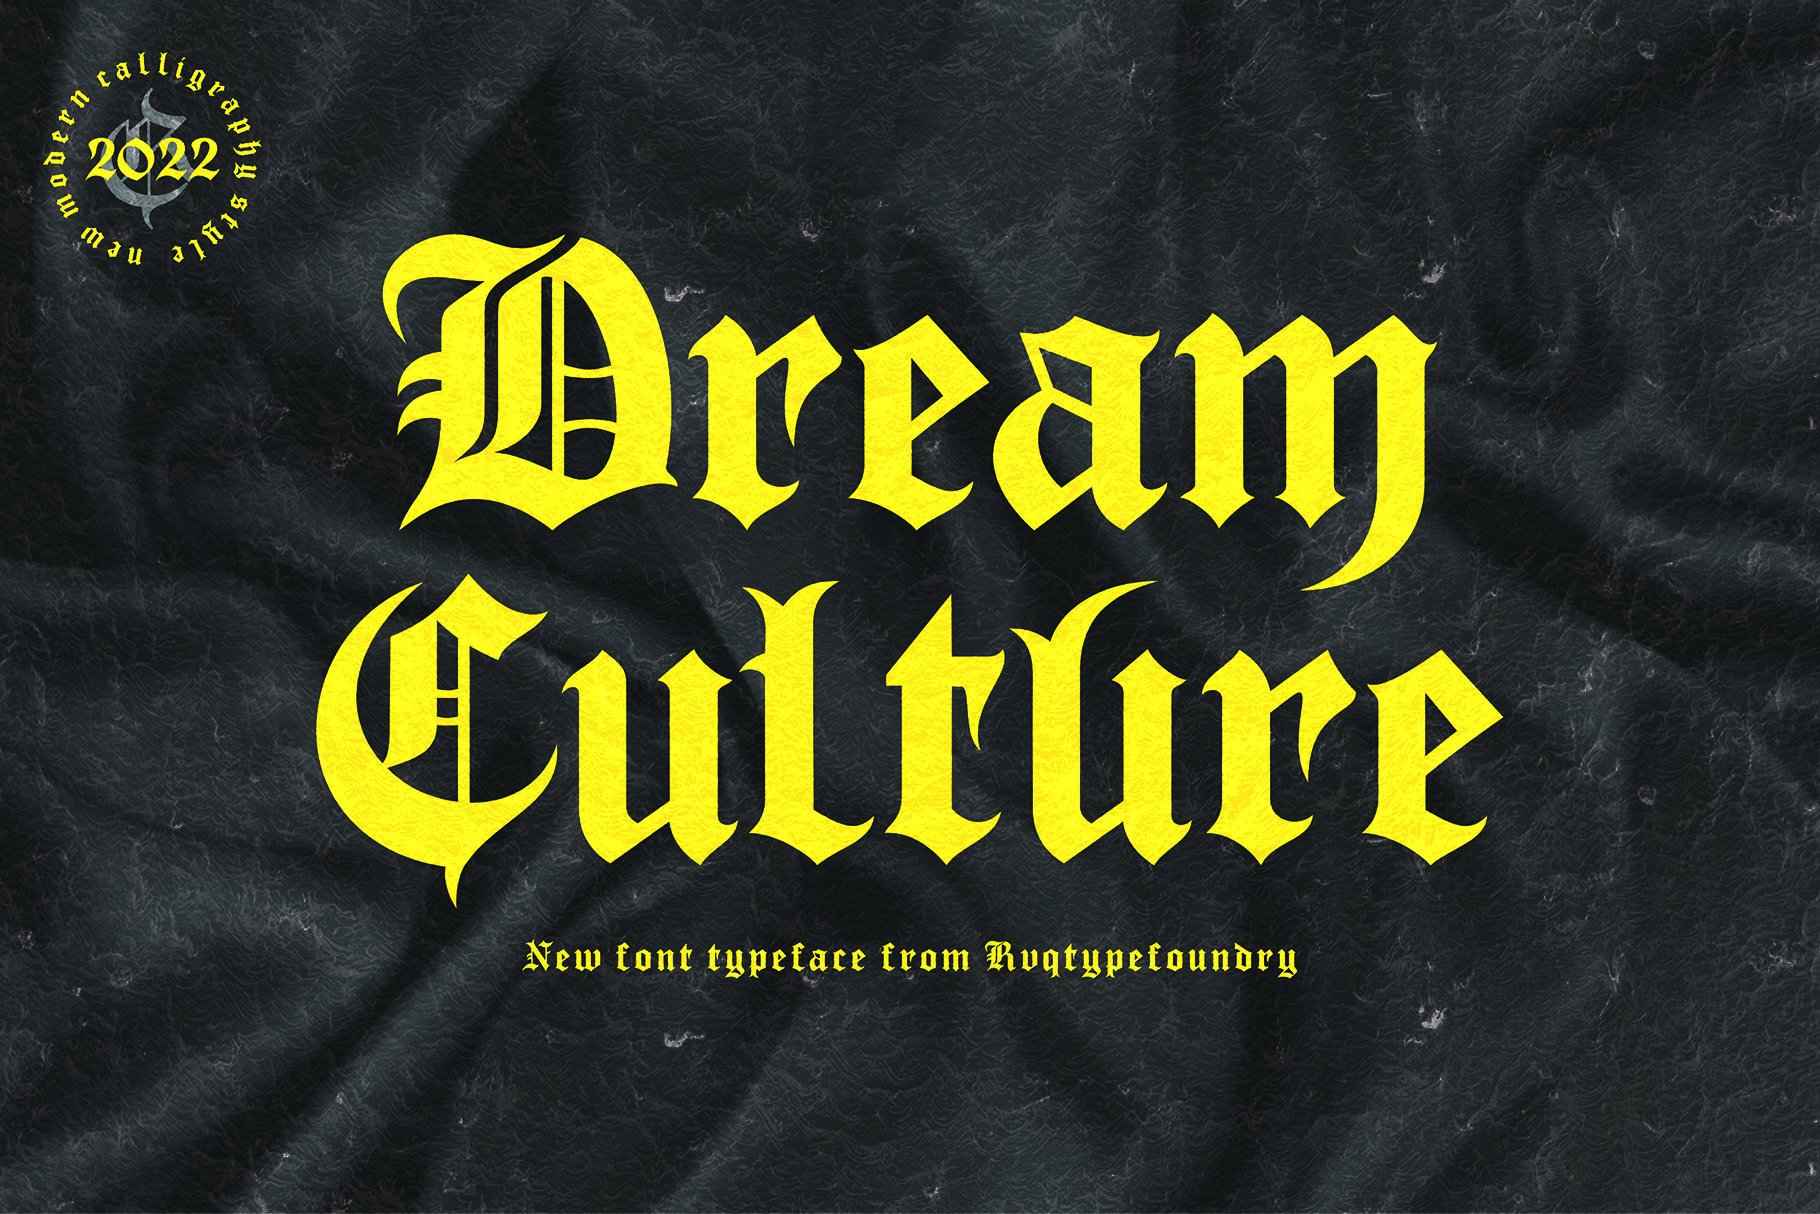 Dream Culture (intro sale) cover image.